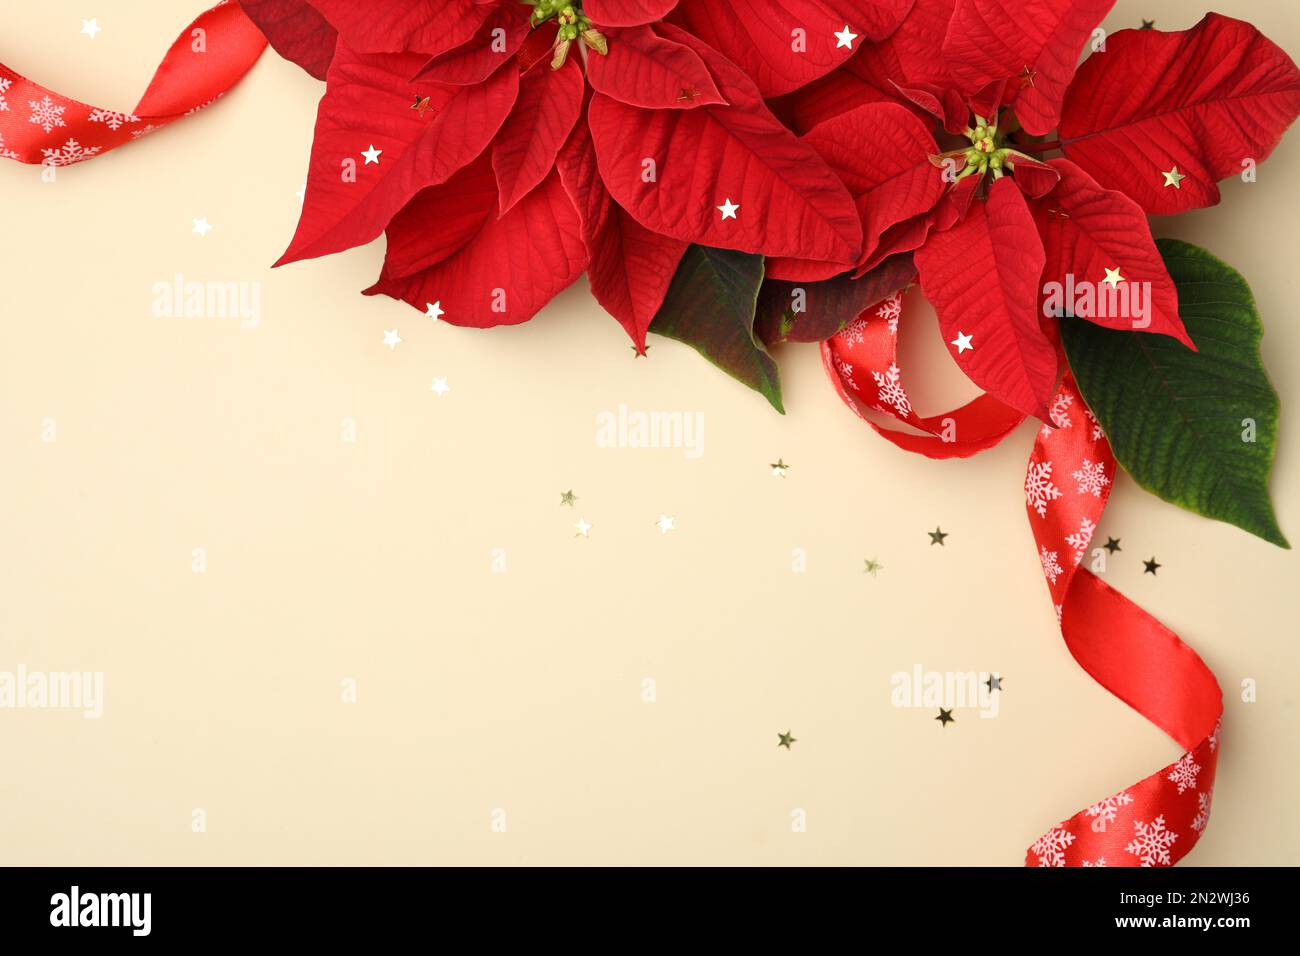 Composición plana con poinsettias (flores tradicionales de Navidad) y cinta  sobre fondo beige. Espacio para texto Fotografía de stock - Alamy